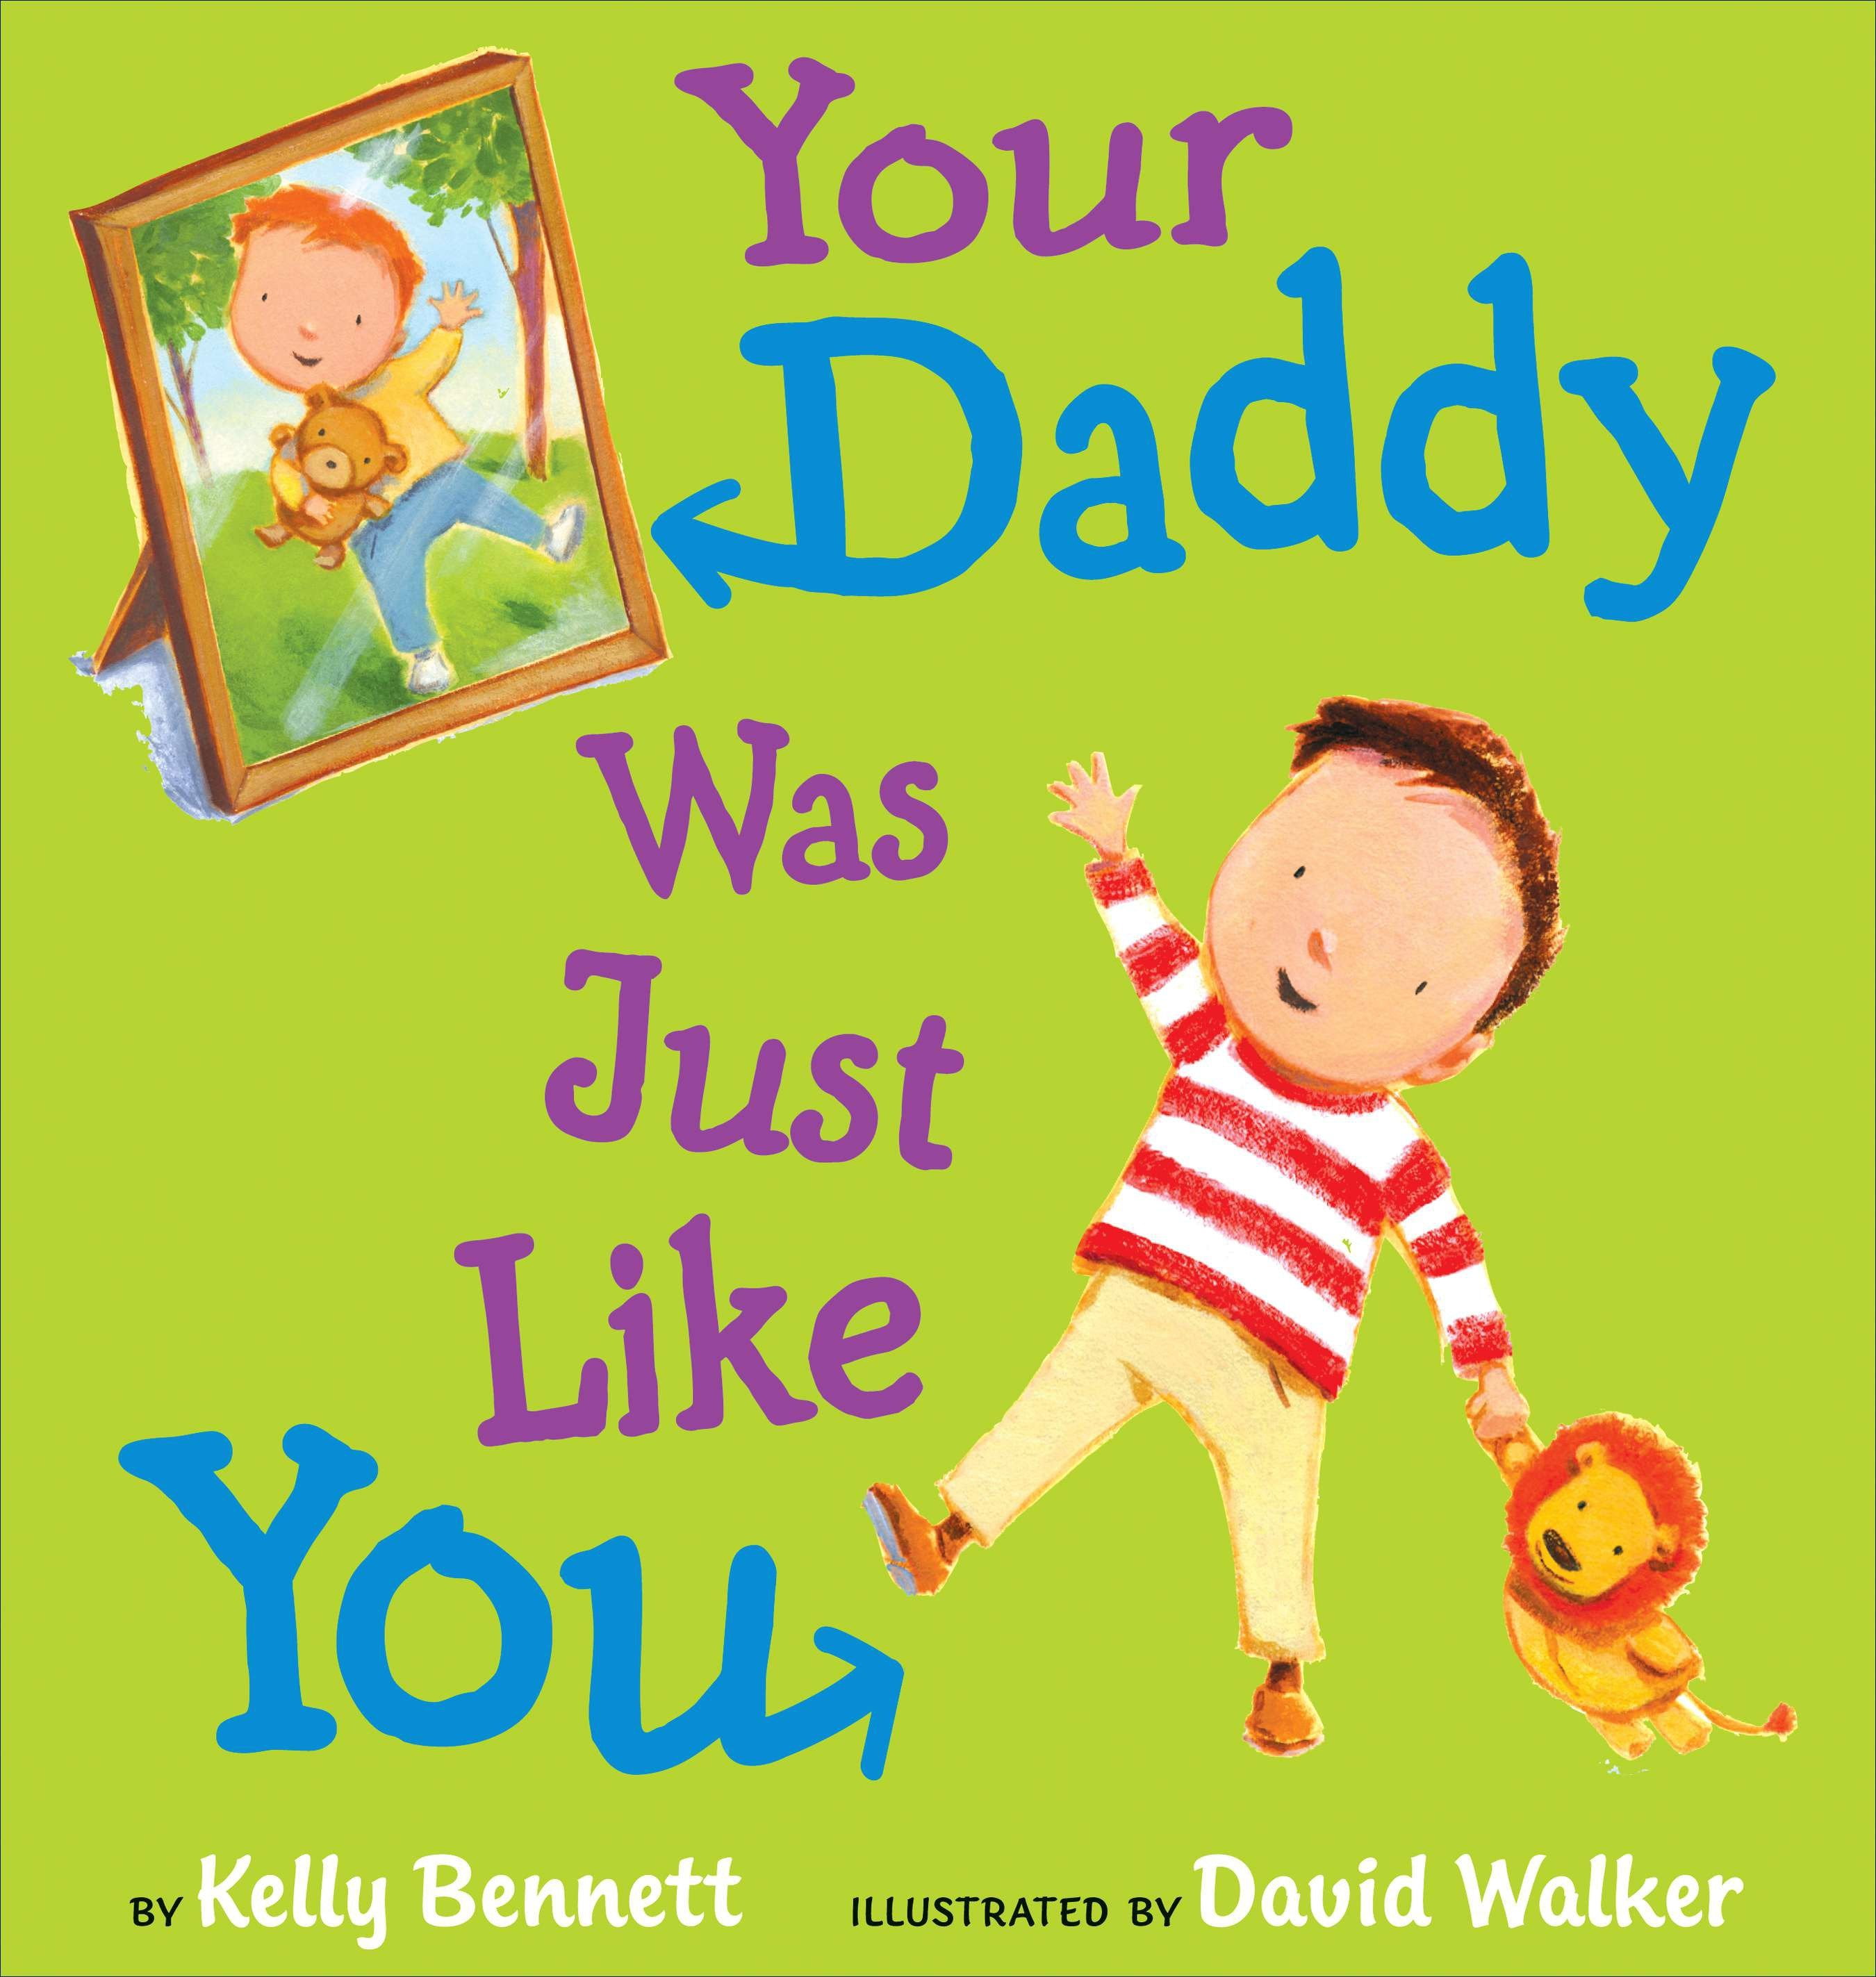 Daddy перевод с английского. Your Daddy. Келли Уолкер. Was your Daddy. Your dad.